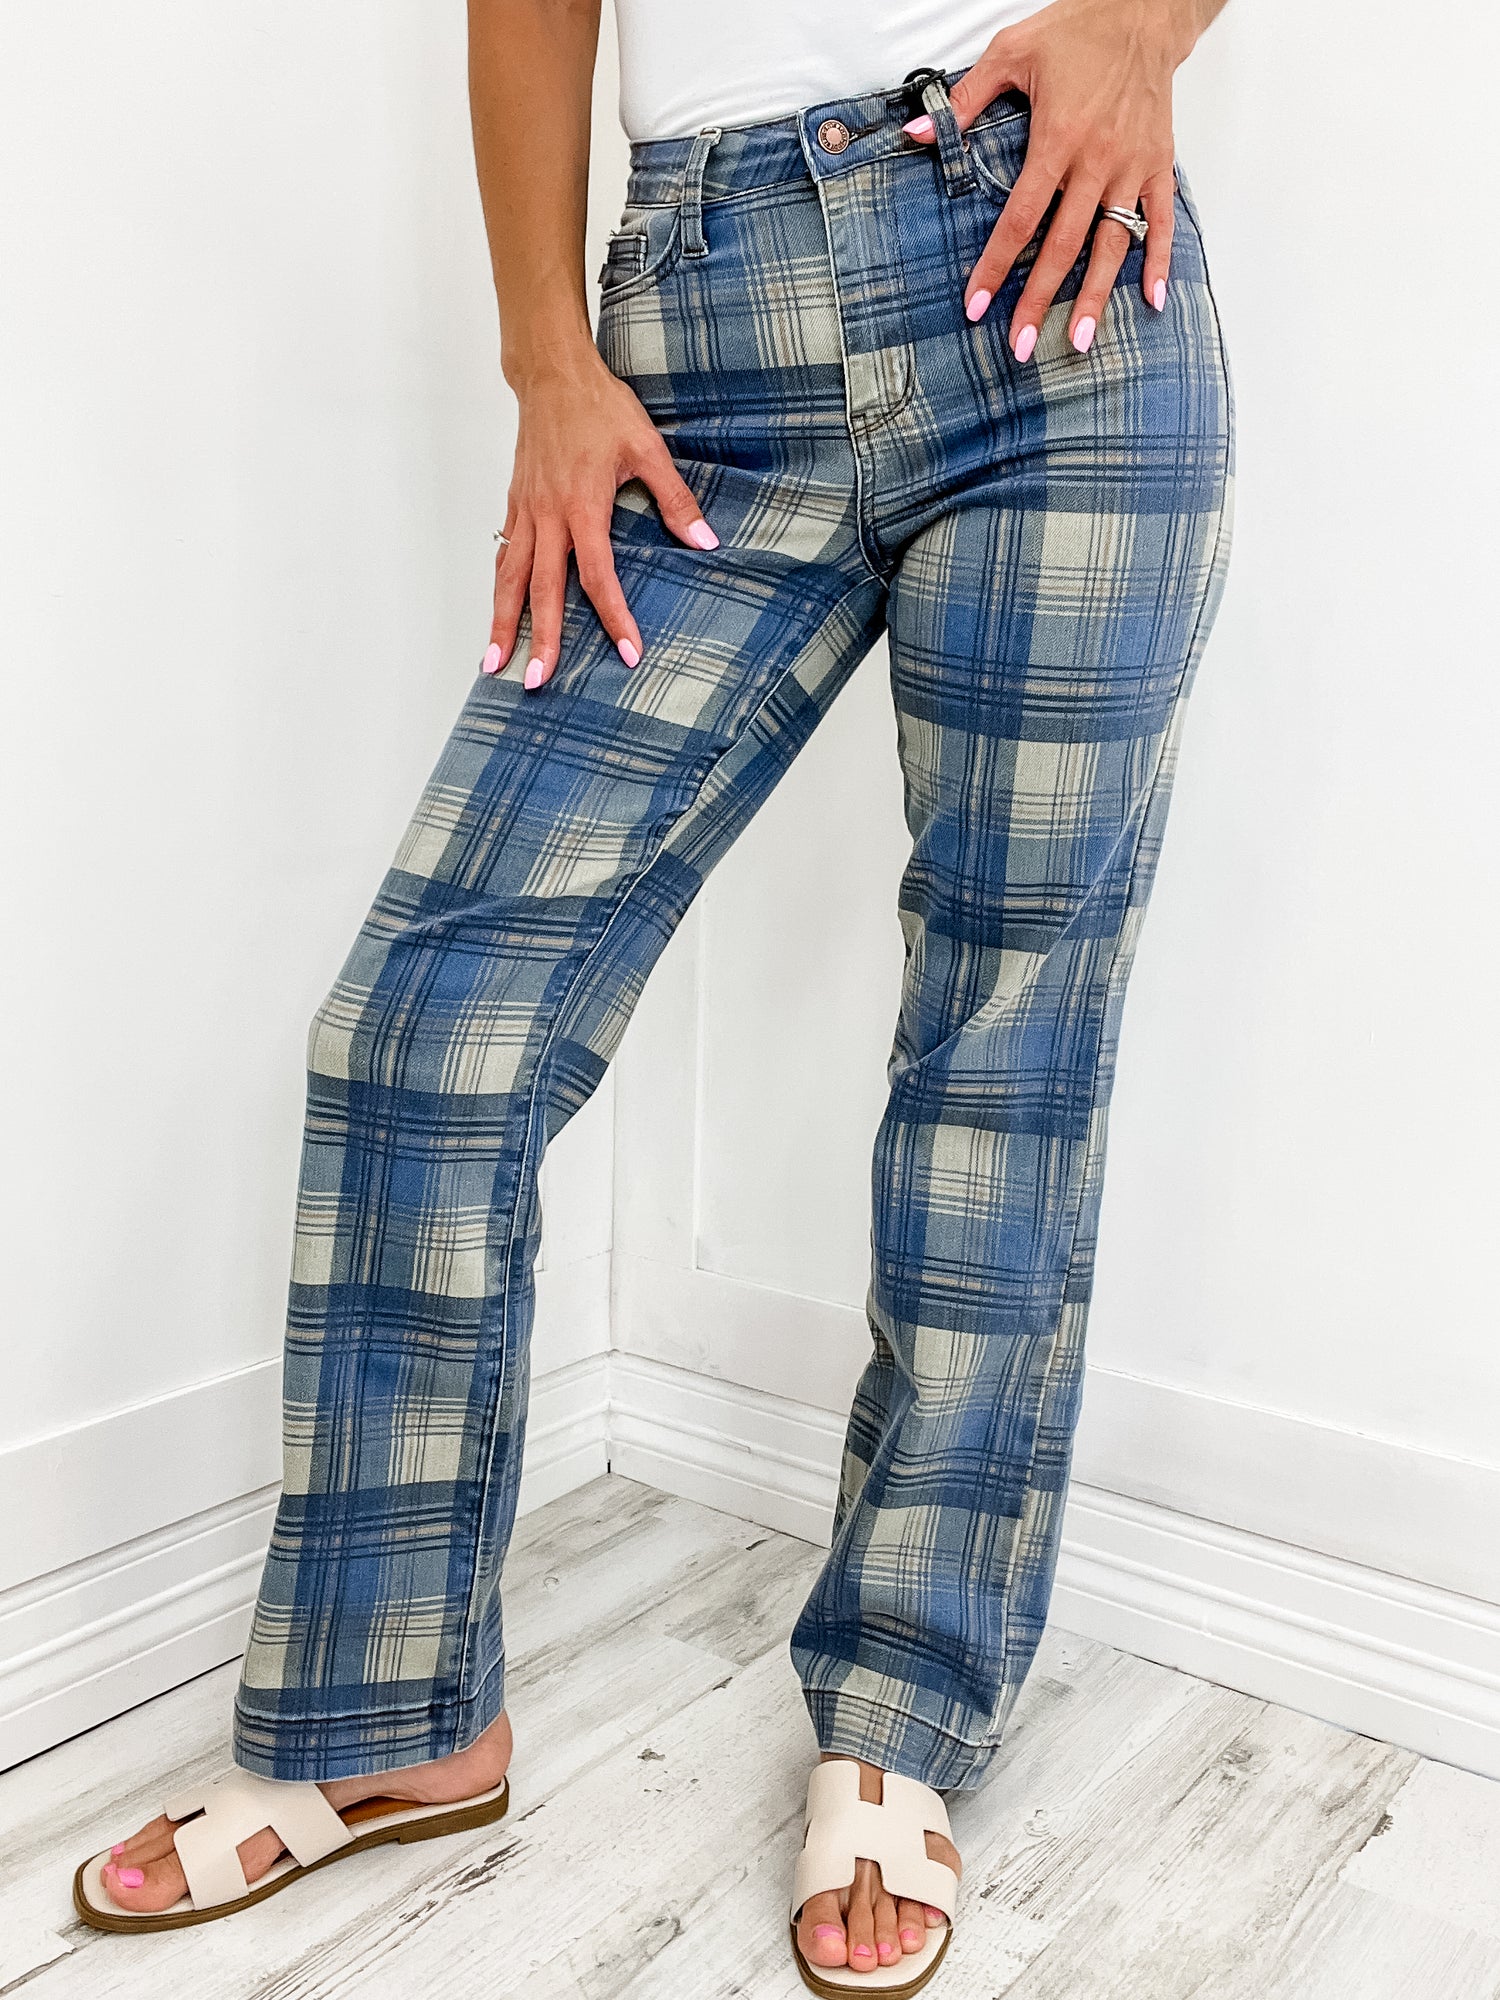 Judy Blue High Waist Vintage Look Plaid Straight Leg Jeans – Emma